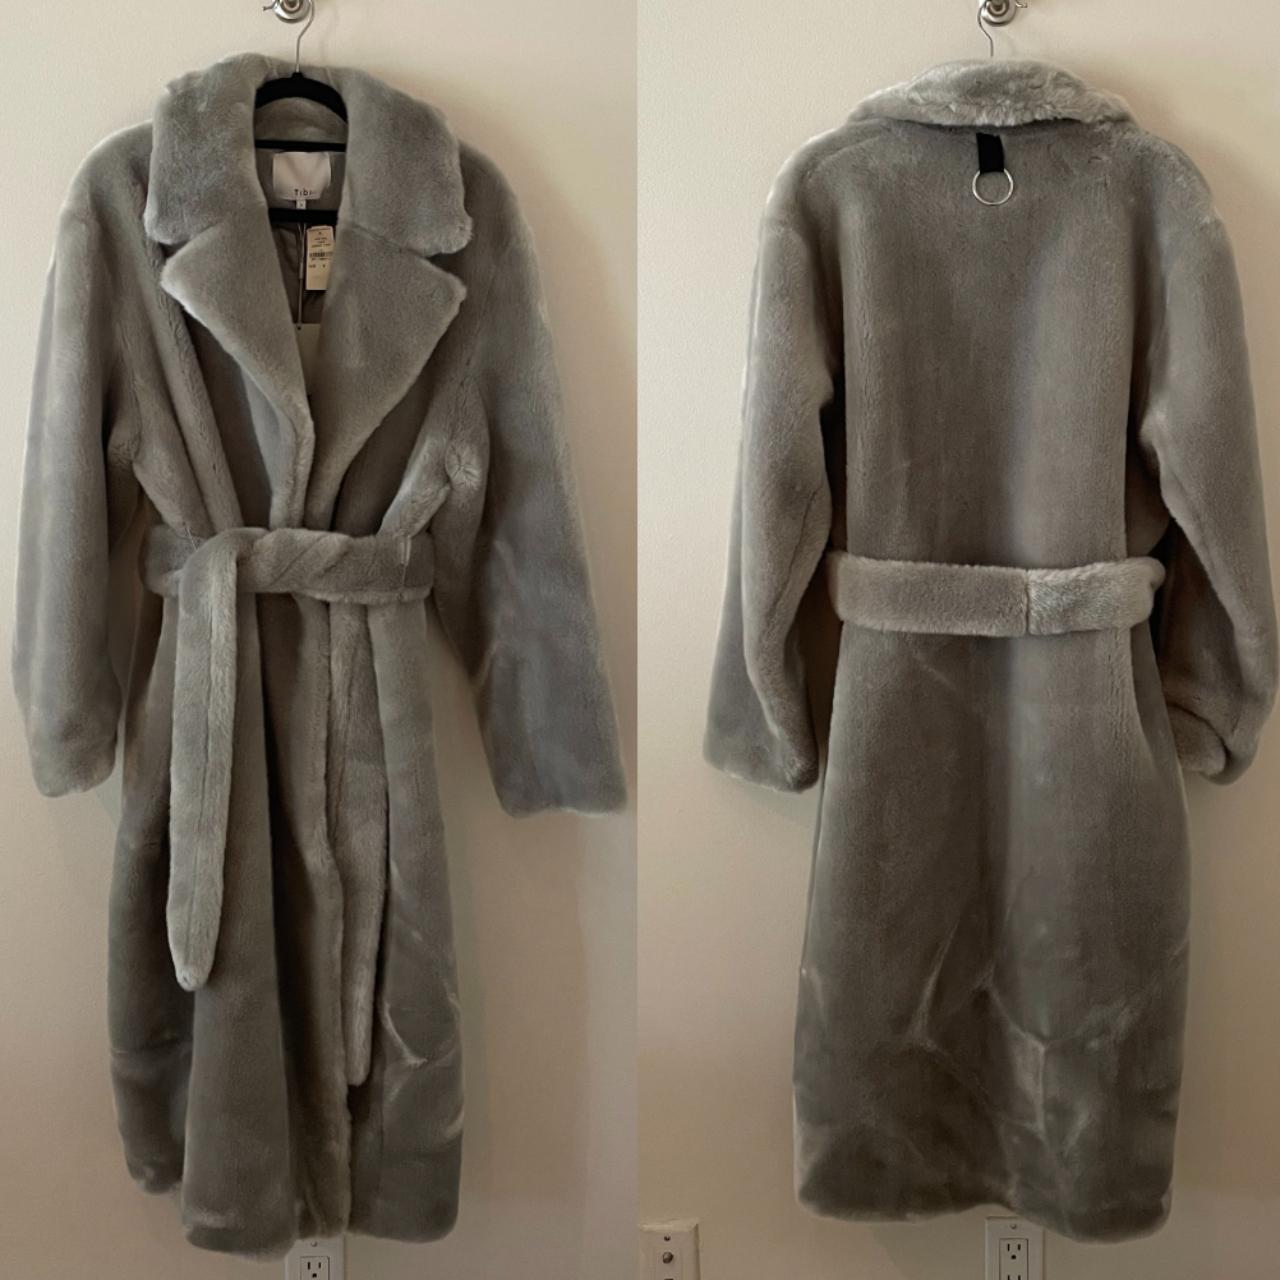 Tibi Women's Grey Coat